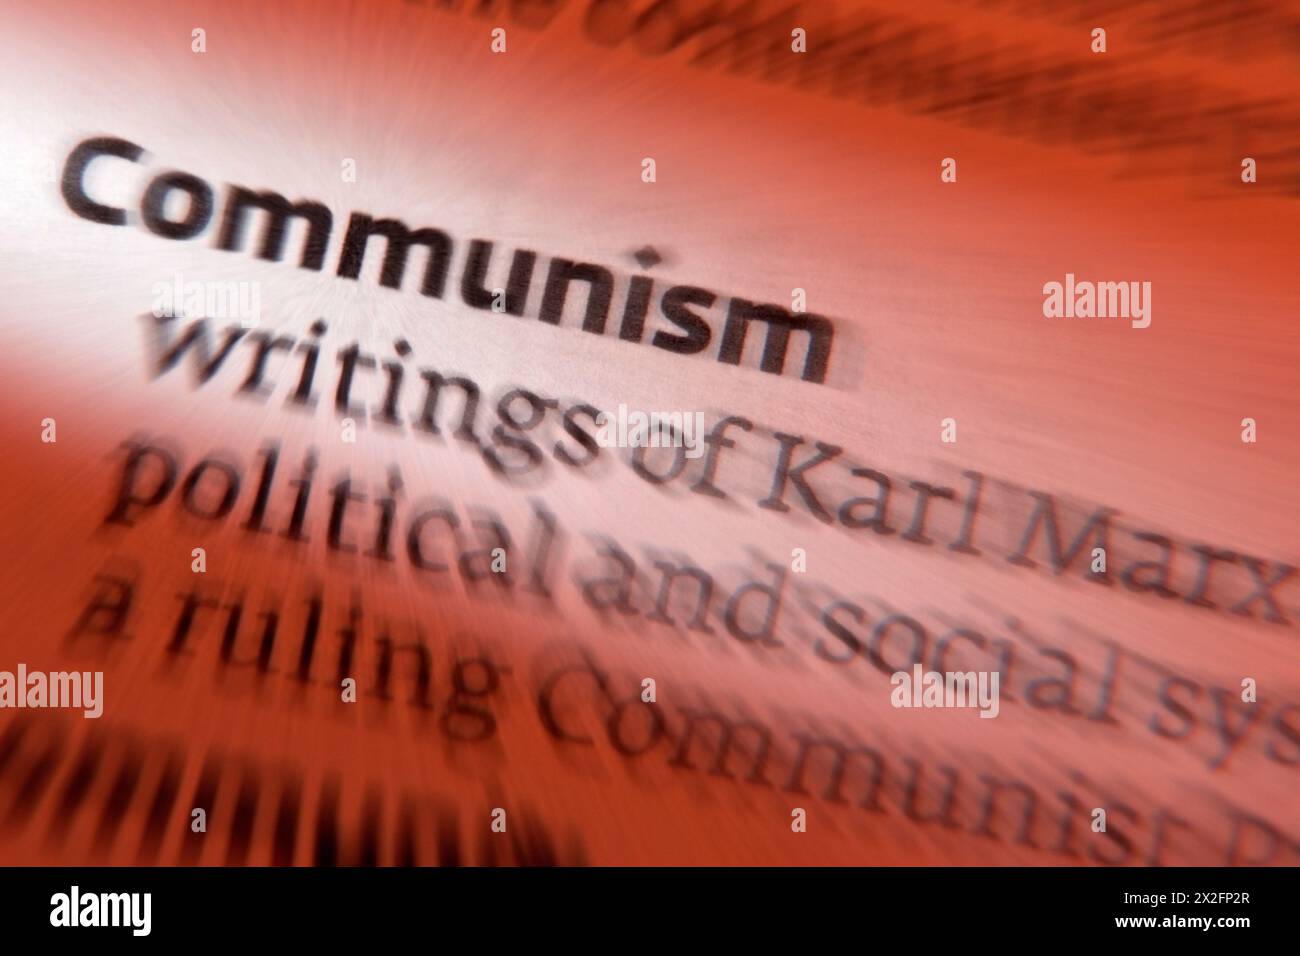 Kommunismus - eine soziopolitische, philosophische und wirtschaftliche Ideologie von links bis links, deren Ziel die Schaffung einer kommunistischen Gesellschaft, eines Sozioöko ist Stockfoto